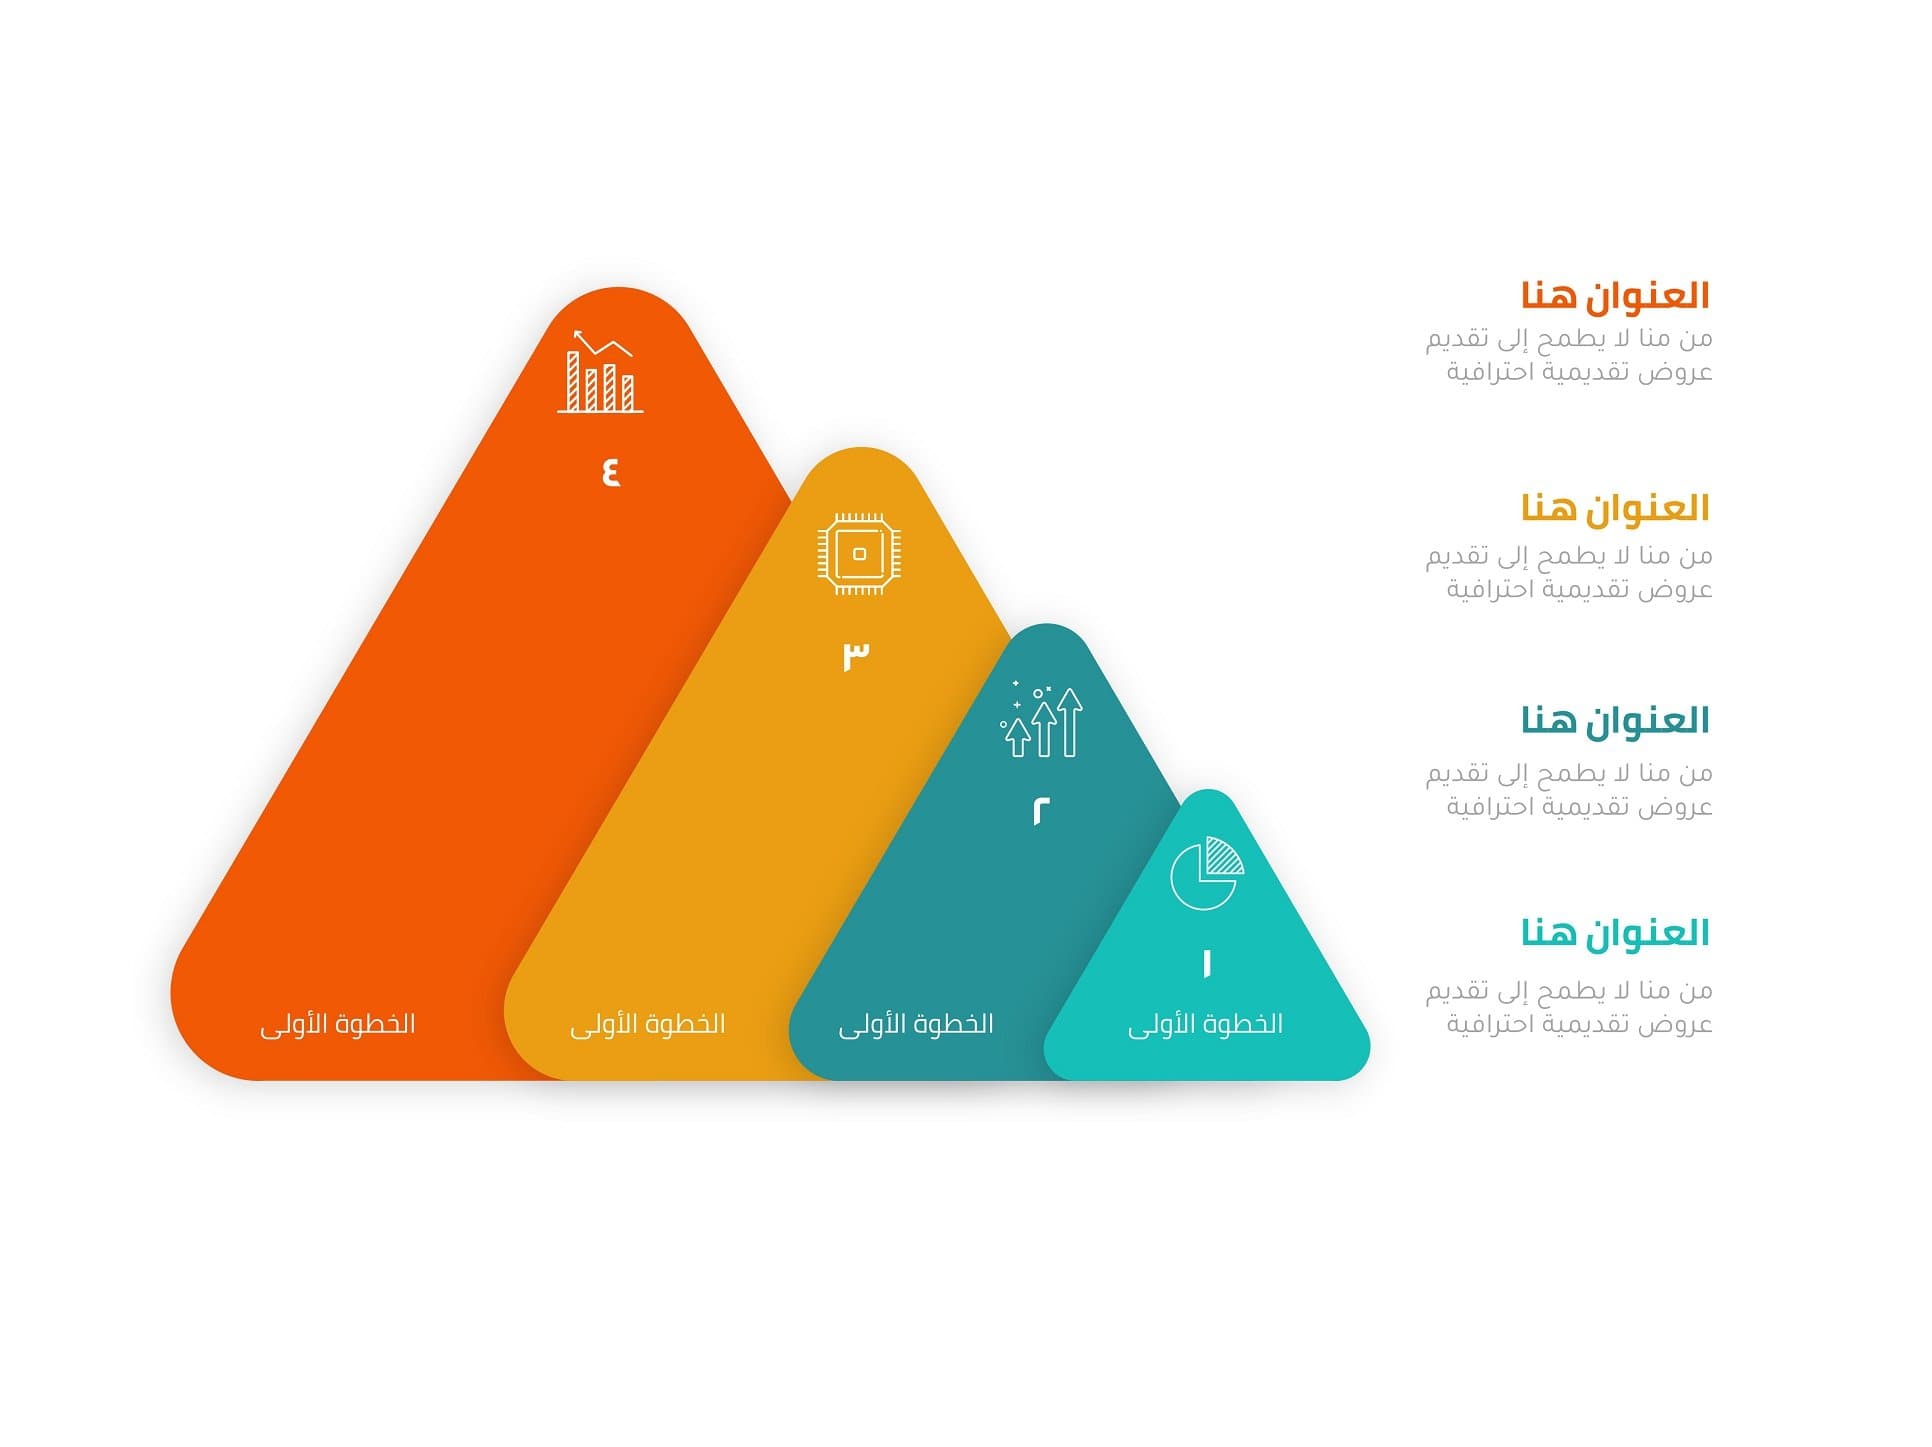 إنفوجرافيك مثلثات بأربع خيارات متصاعدة-Infographic-Takareer